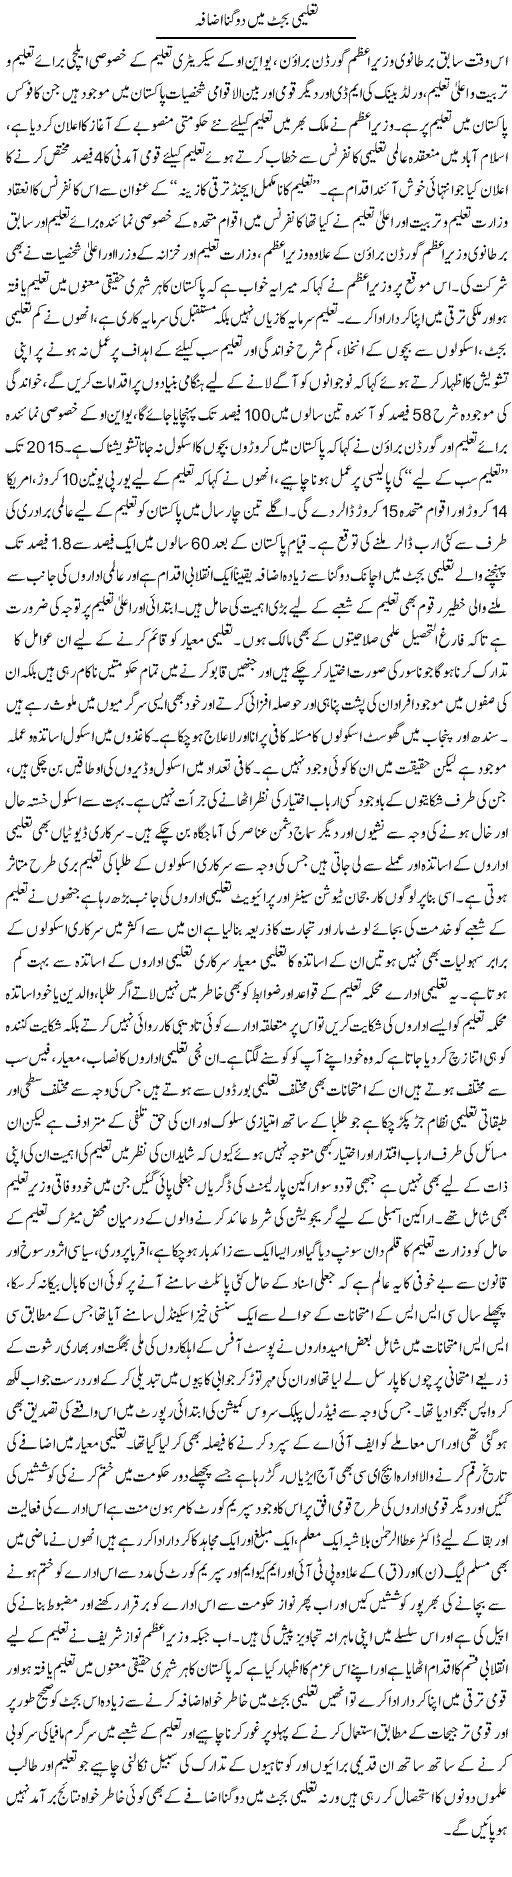 Taleemi Budget Main Do Gunna Izafa | Adnan Ashraf | Daily Urdu Columns